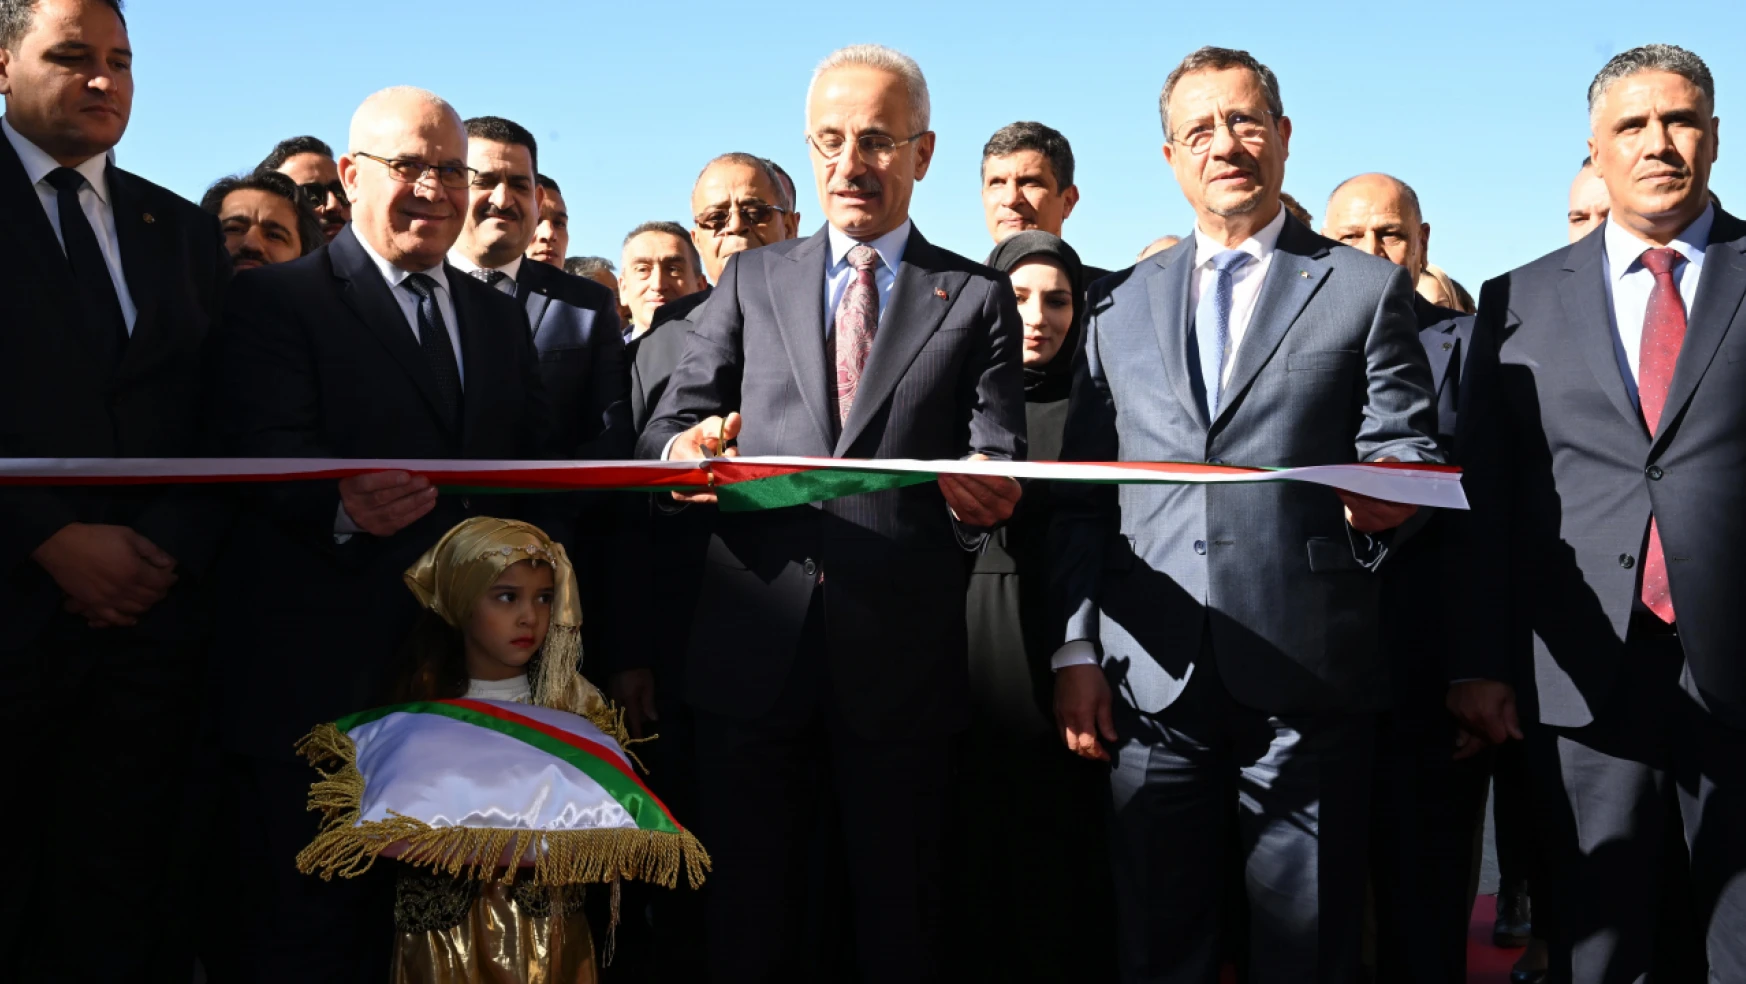 Ulaştırma Ve Altyapı Bakanı Abdulkadir Uraloğlu, Cezayir'de 19. Uluslararası Bayındırlık Fuarı'nın Açılışını Gerçekleştirdi